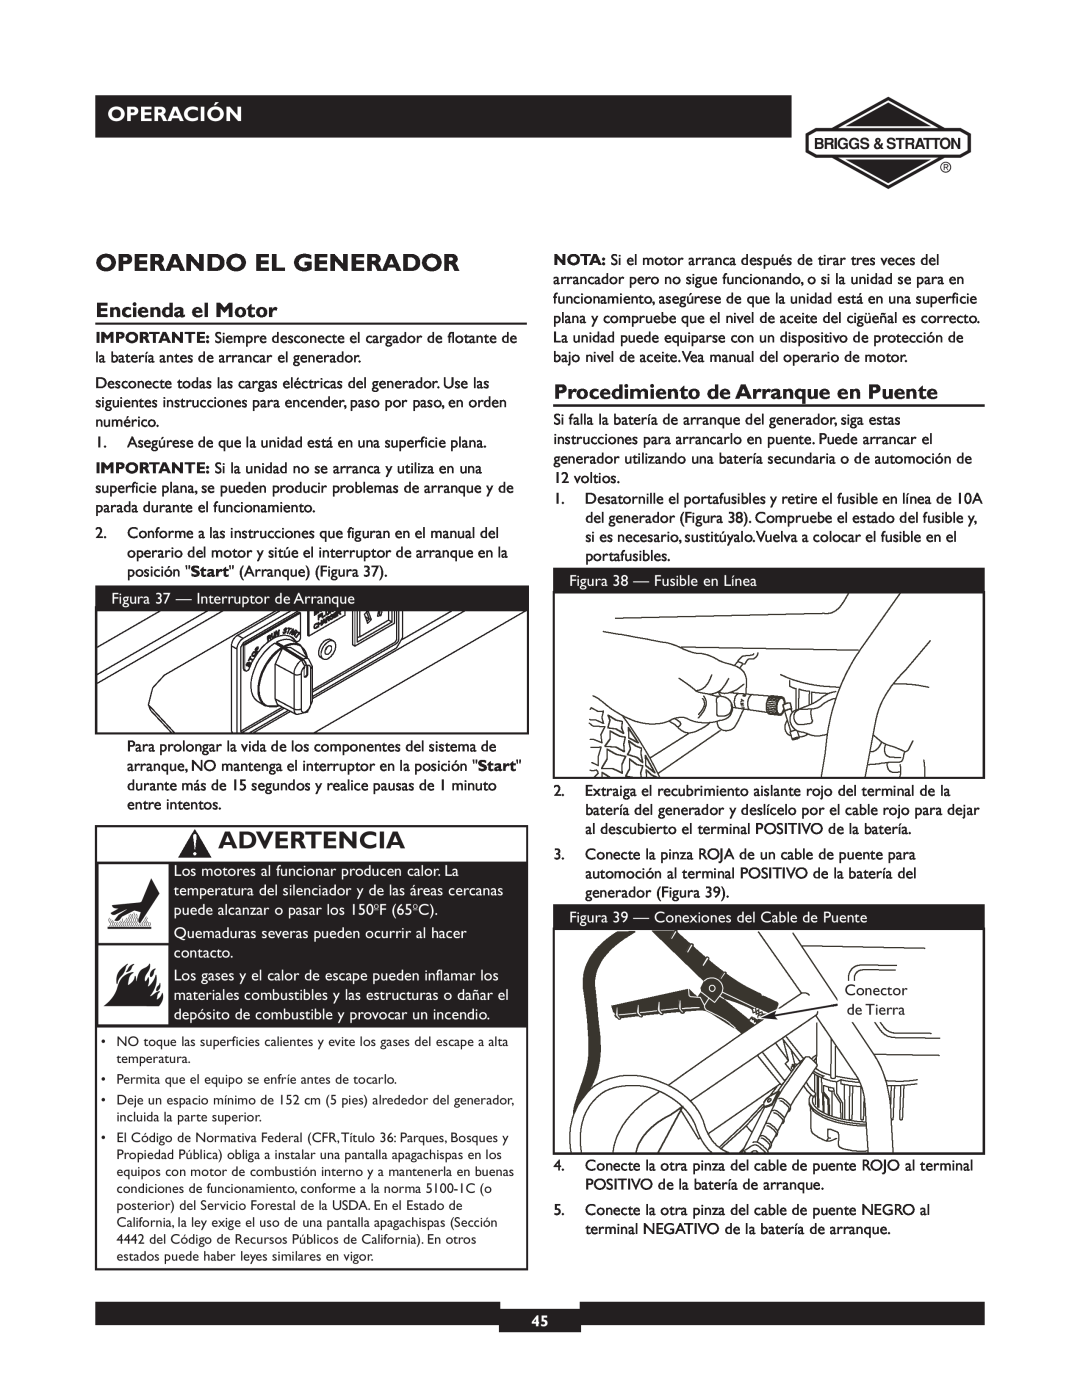 Briggs & Stratton 01894-1 manual Operando El Generador, Encienda el Motor, Procedimiento de Arranque en Puente, Advertencia 